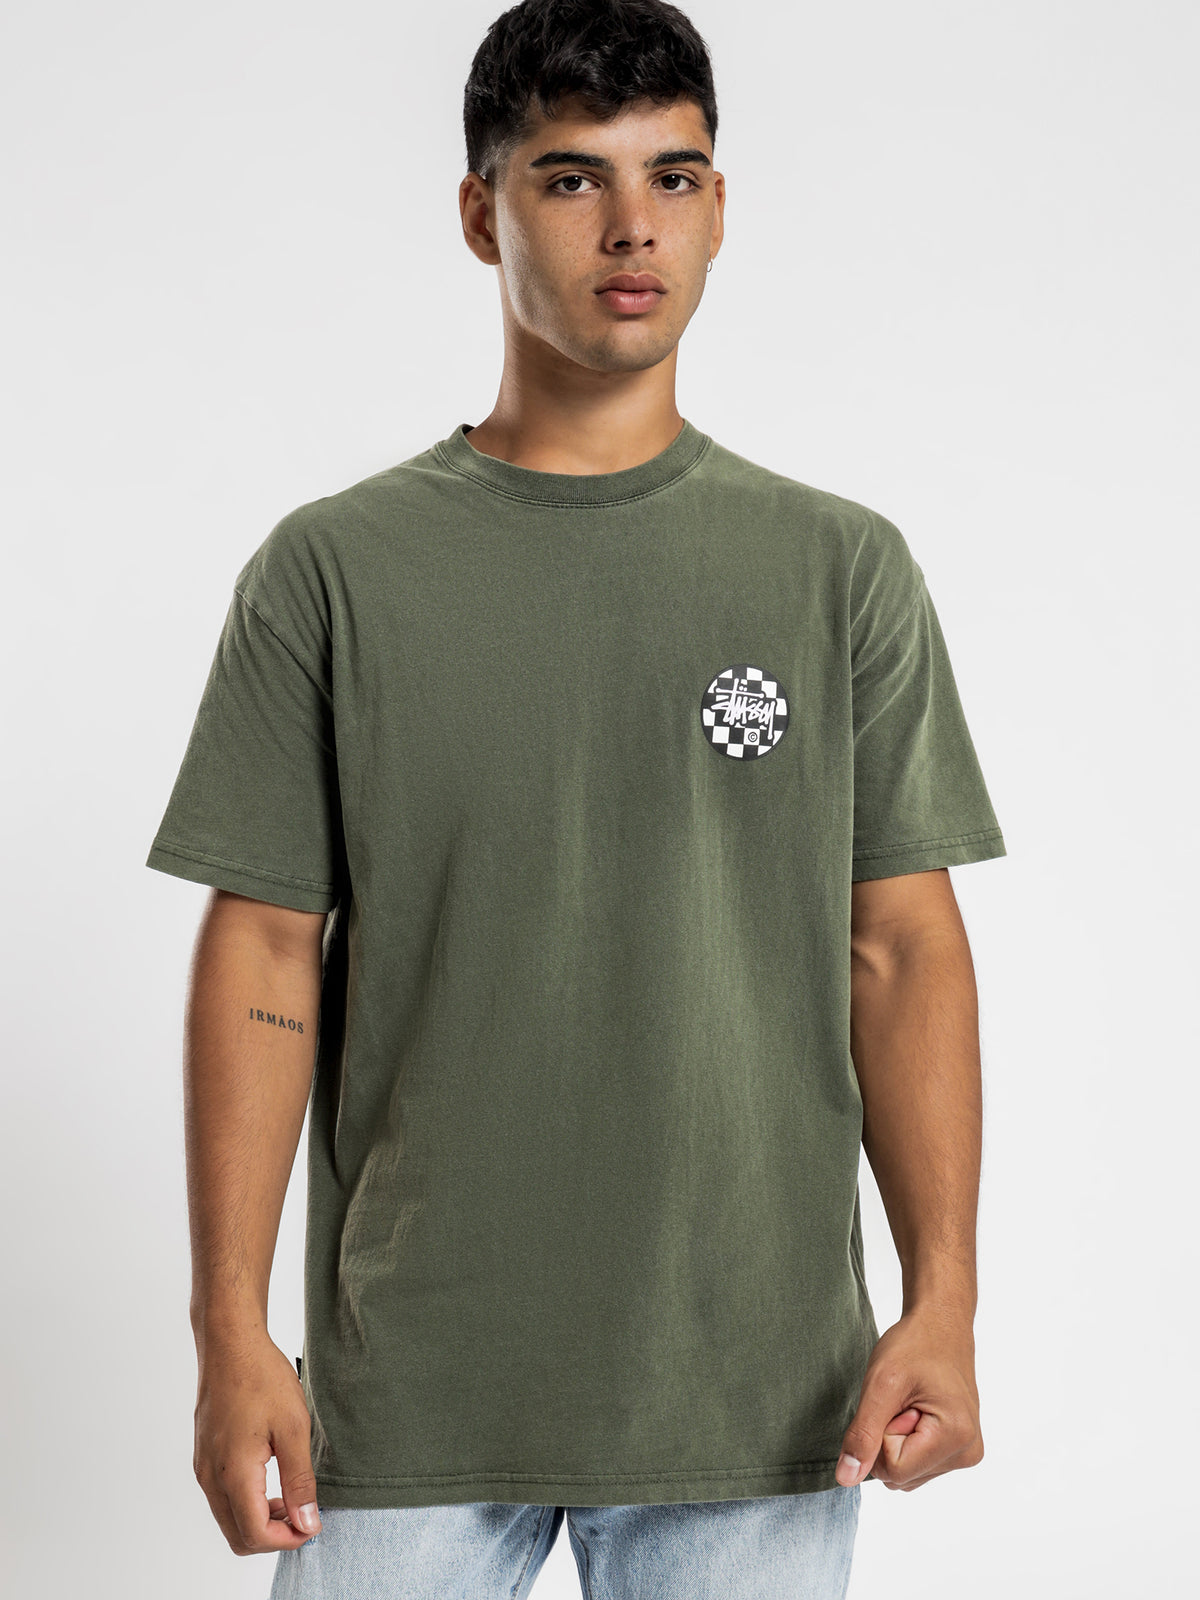 Chequer Dot Short Sleeve T-Shirt in Pigment Flight Green